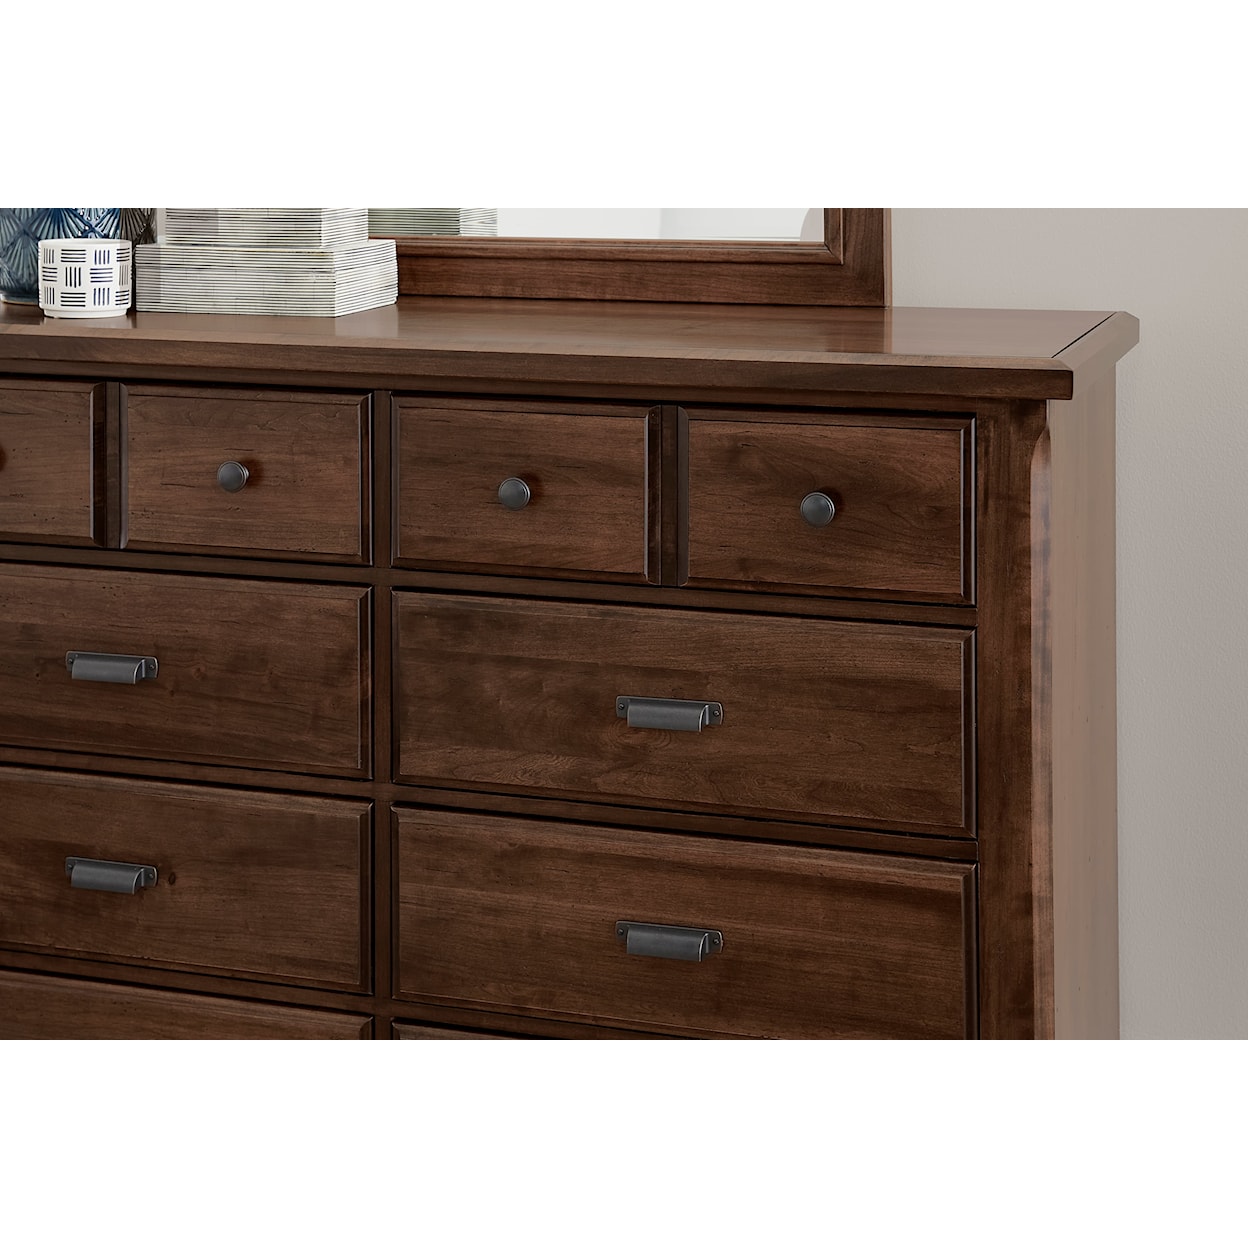 Vaughan-Bassett Lancaster County 8-Drawer Dresser